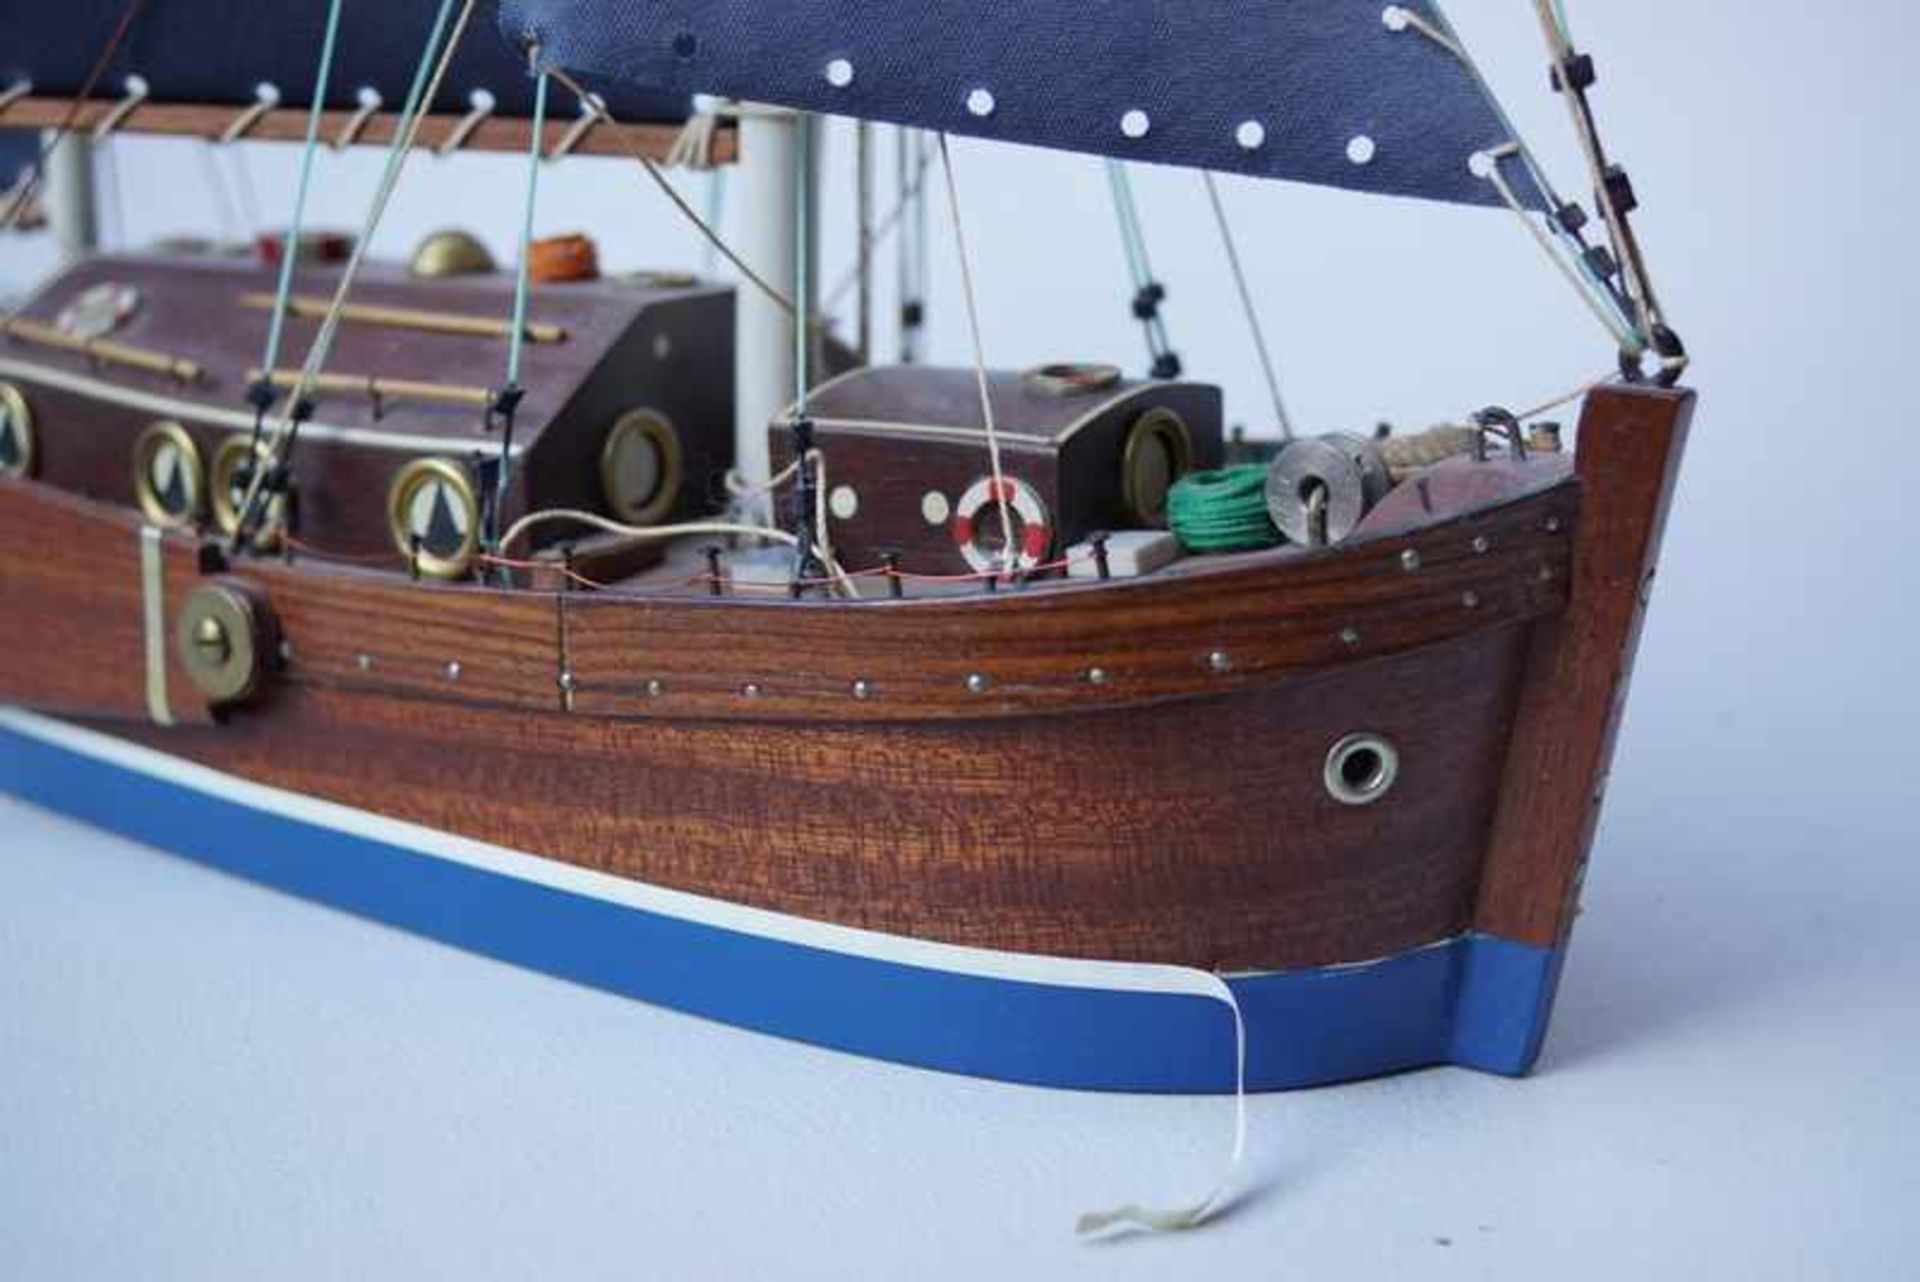 2x Schiffsmodelle "Muiden" und UnbekanntVollholzmodelle mit wenigen Kunststoffaufbauten, nicht - Bild 2 aus 3